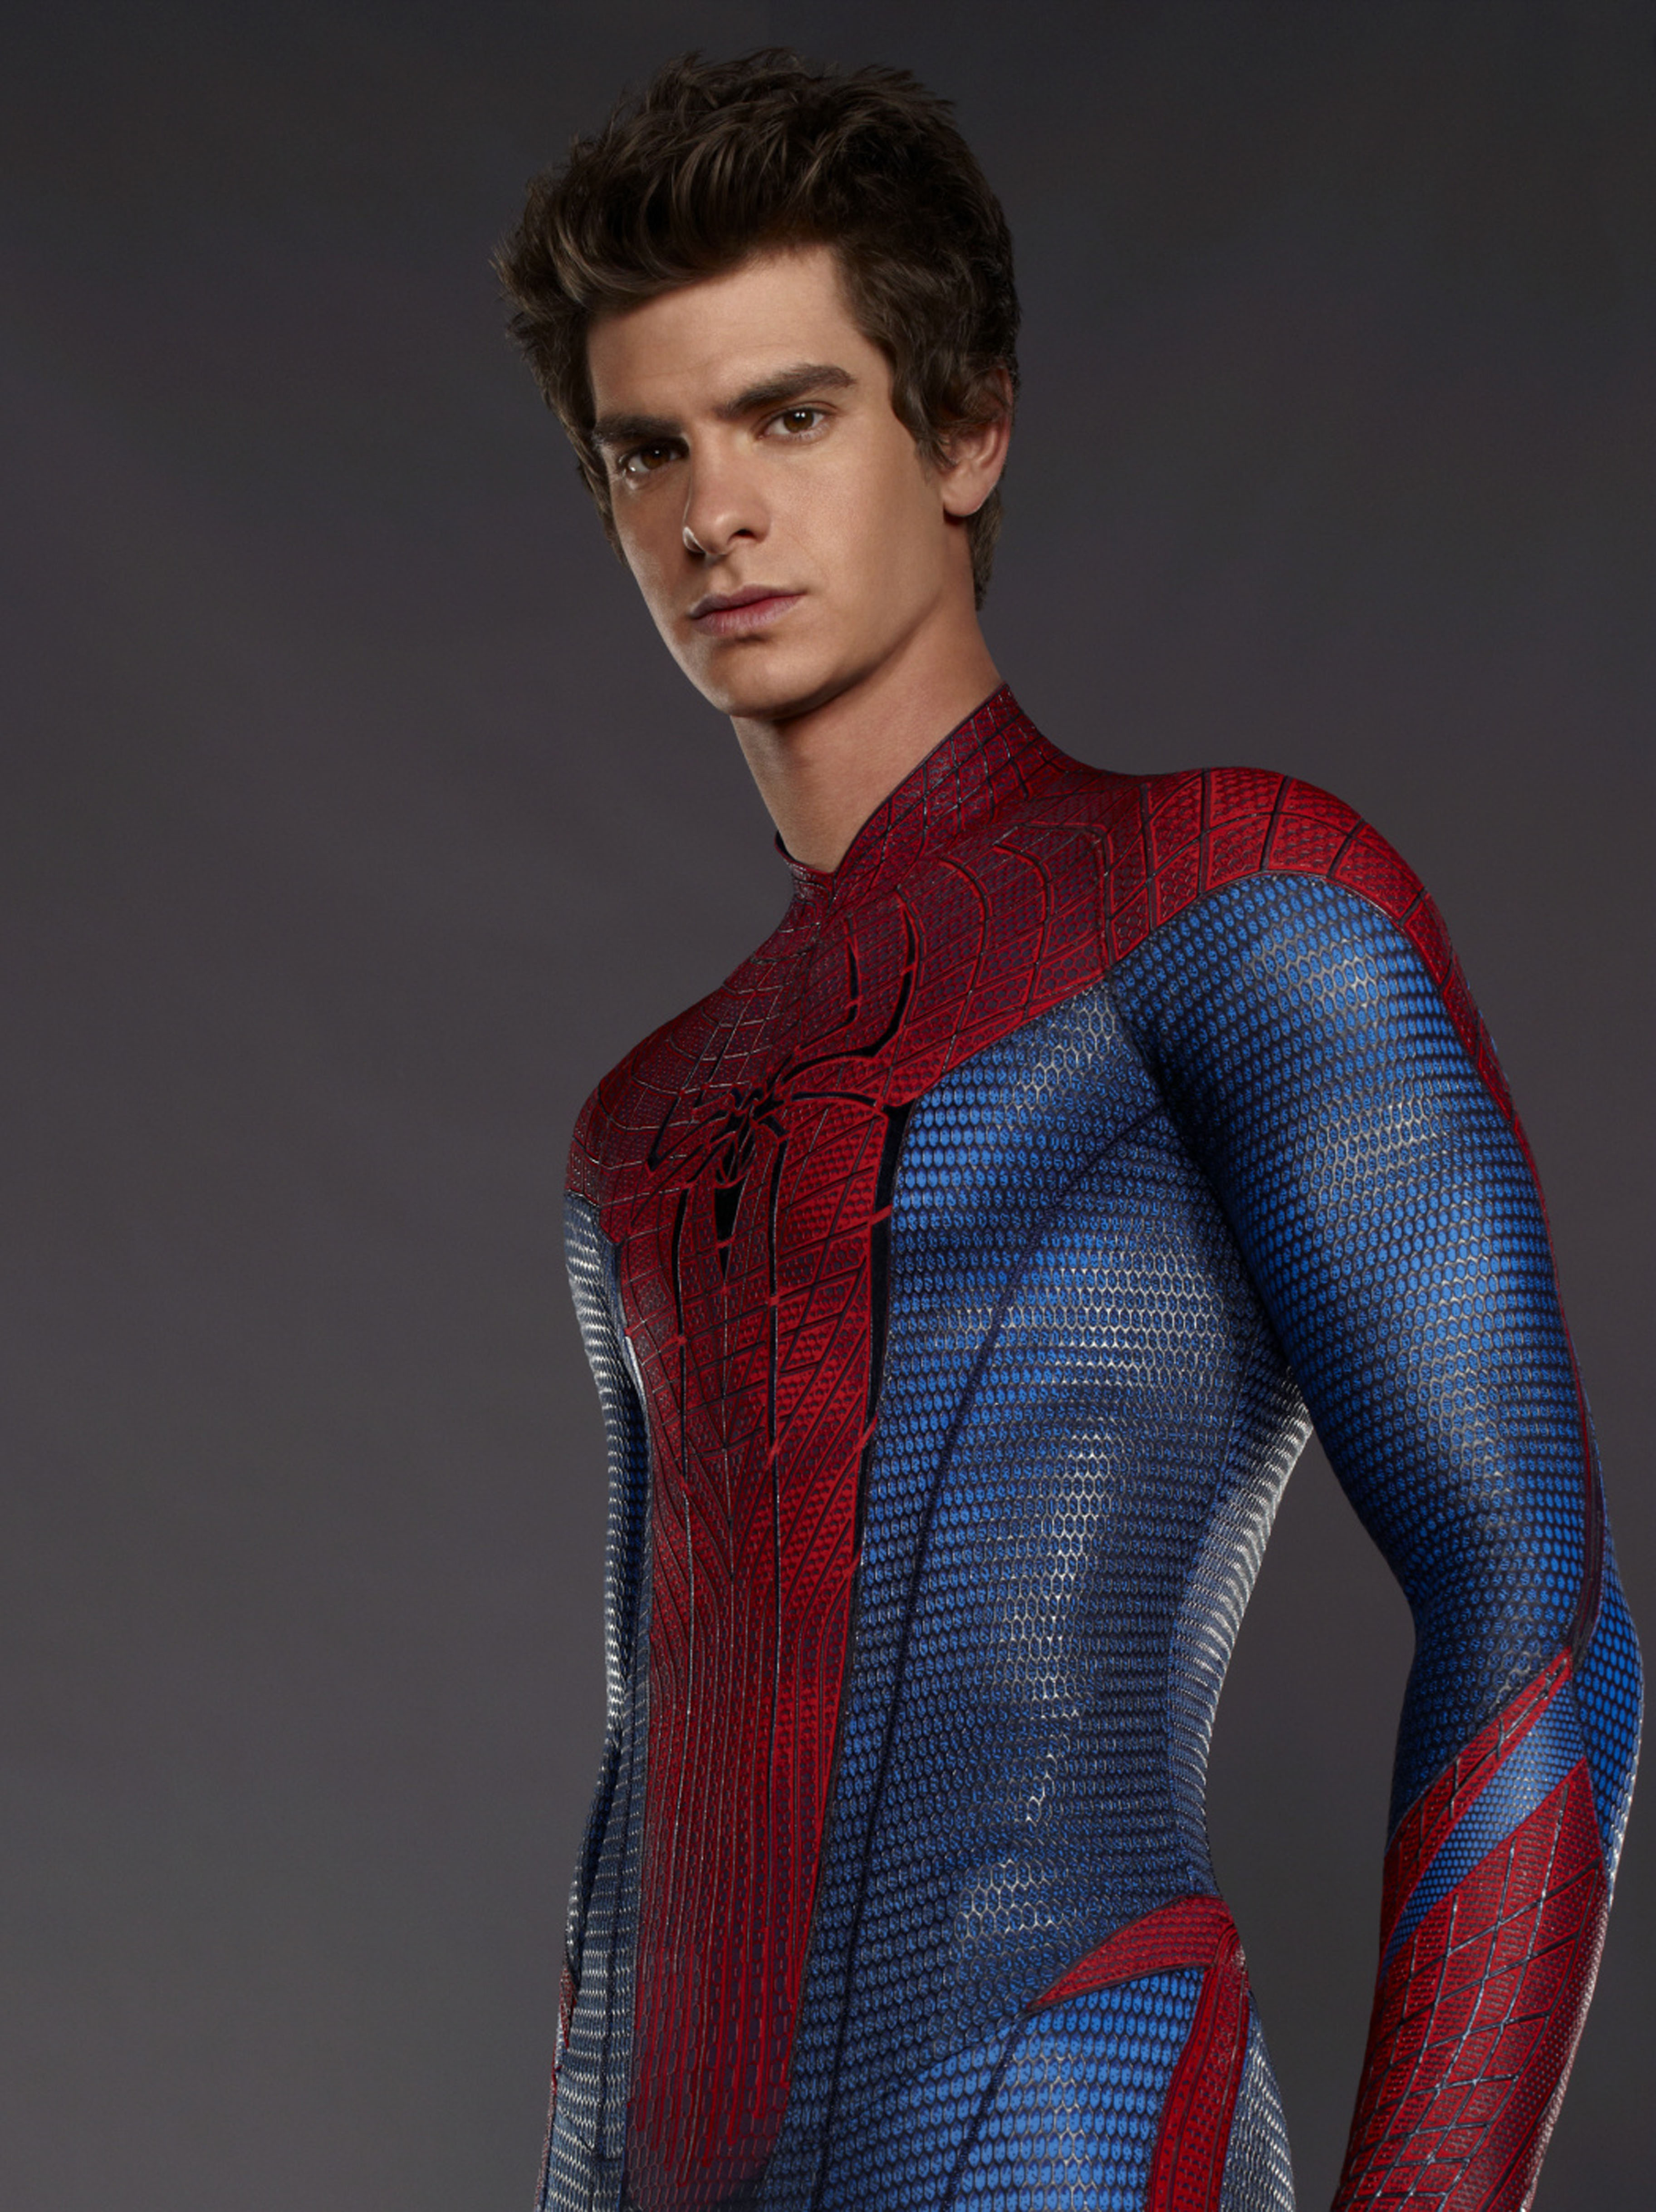 Andrew spielte die Rolle des Spider-Man